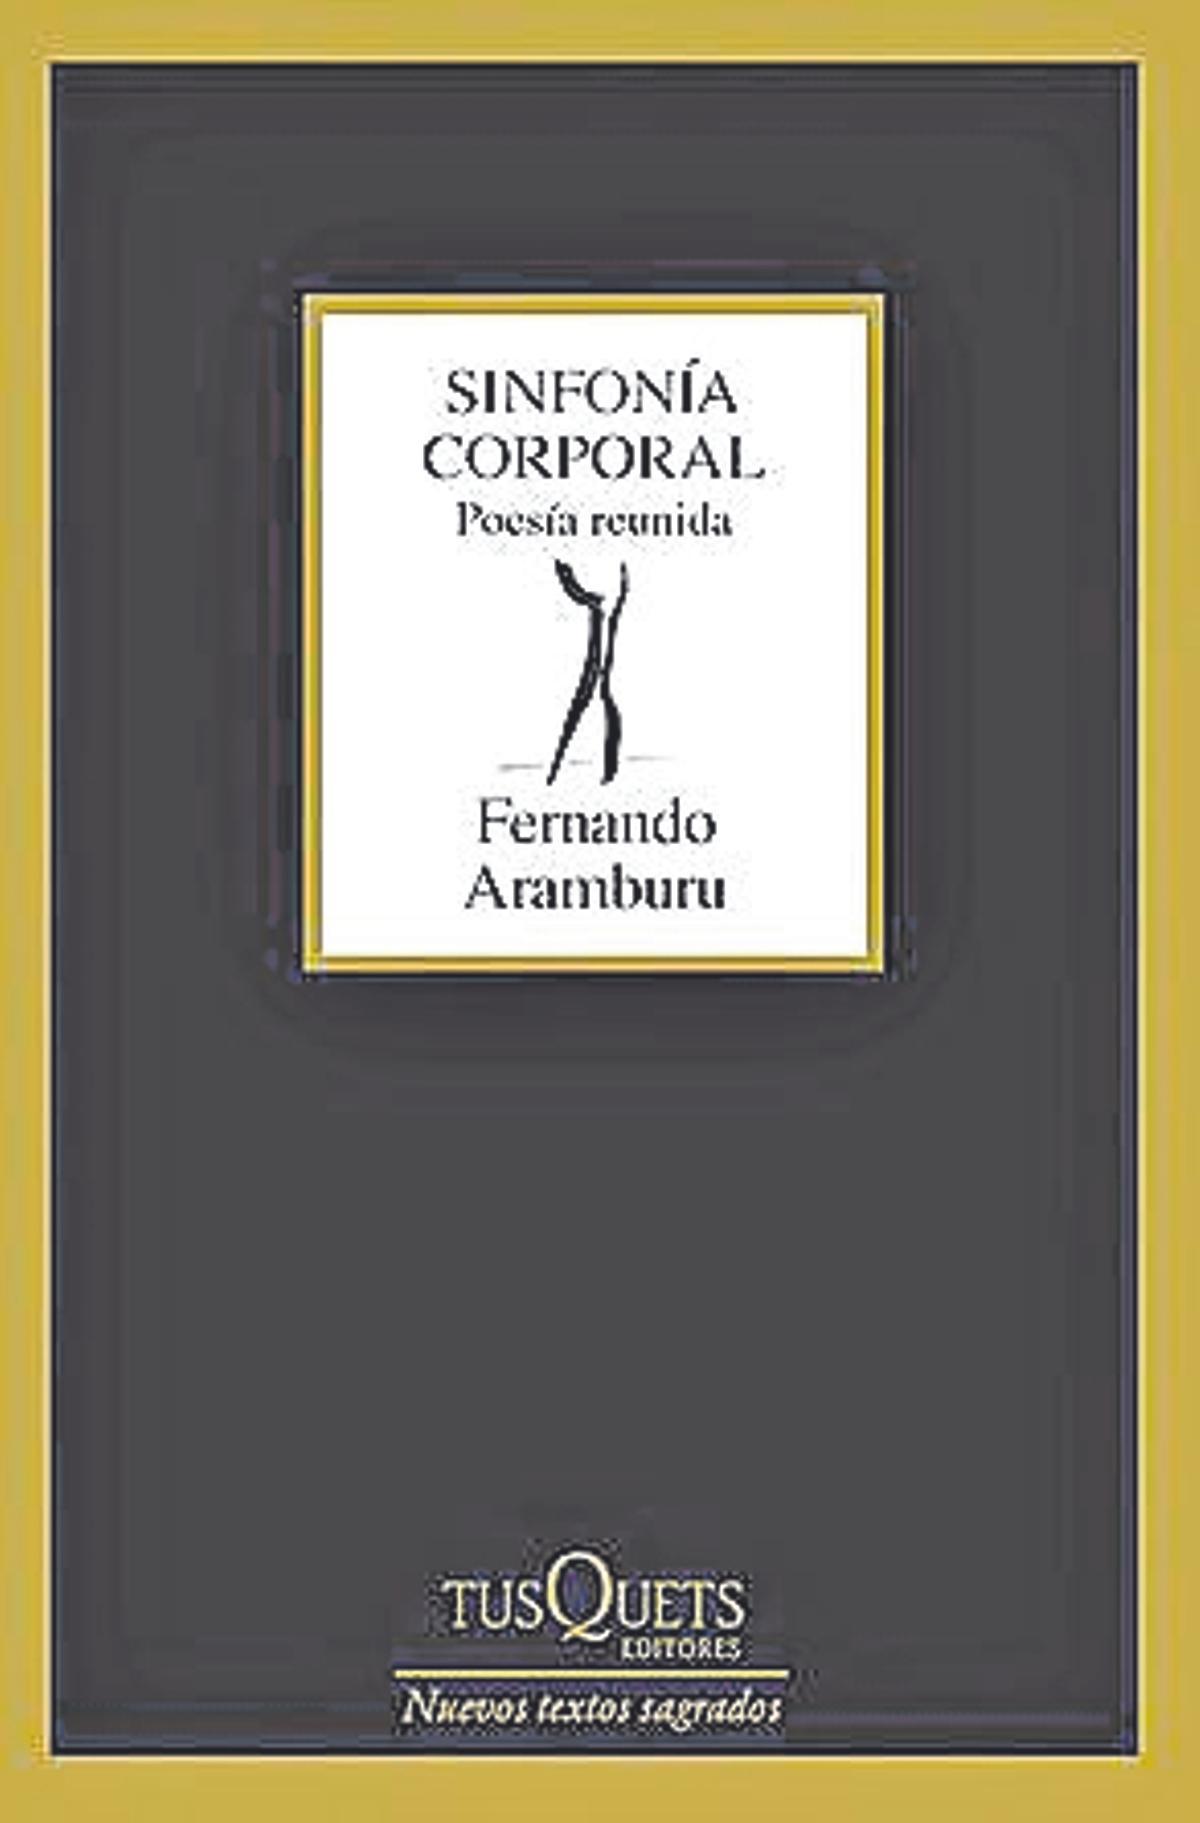 Fernando Aramburu  Sinfonía corporal.   Poesía reunida   Tusquets   208 páginas / 18 euros